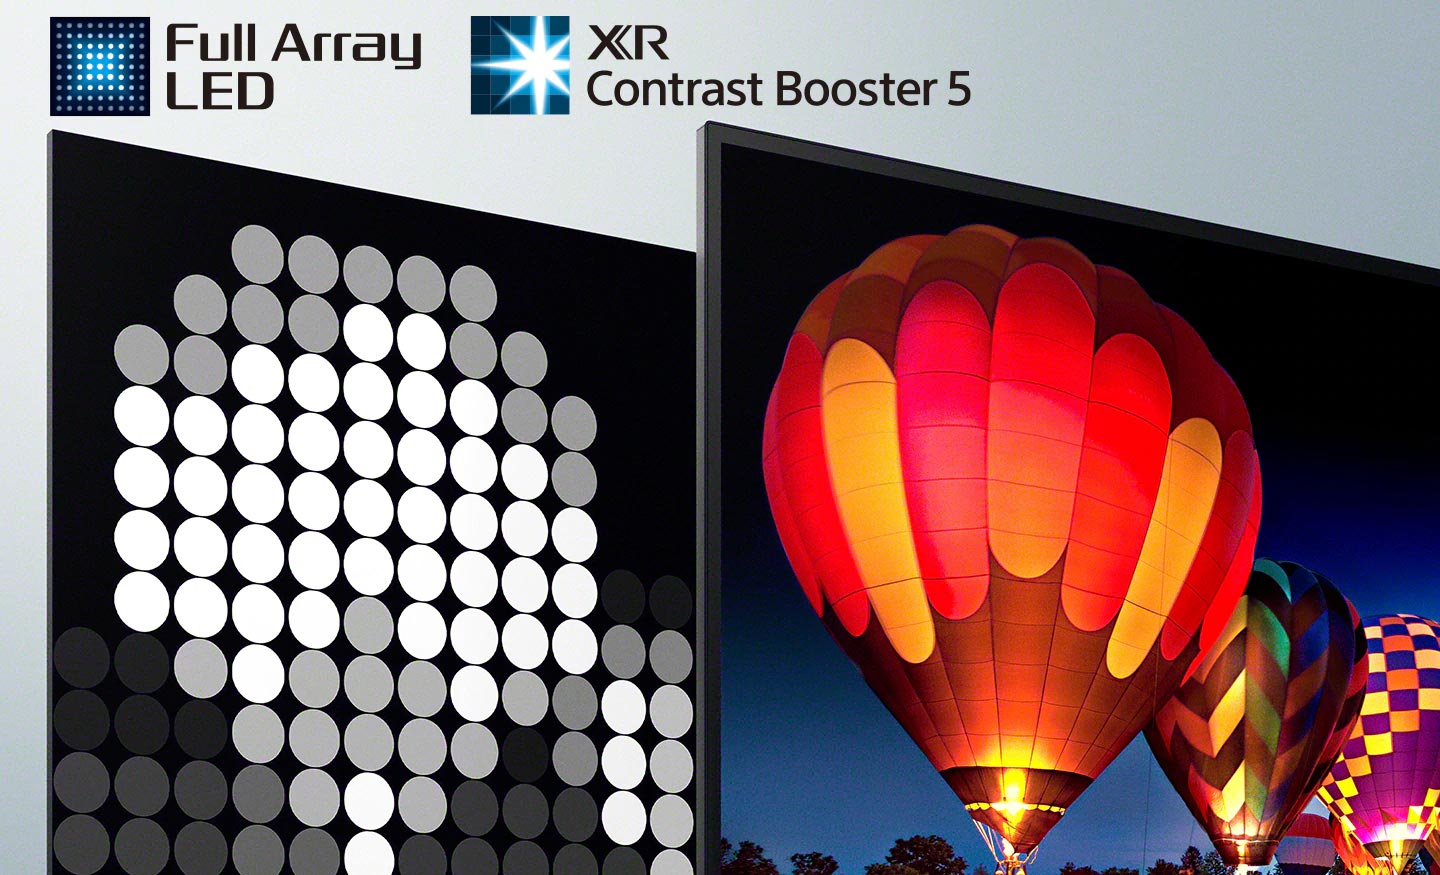 تکنولوژی Full Array LED و XR Contrast Booster 5